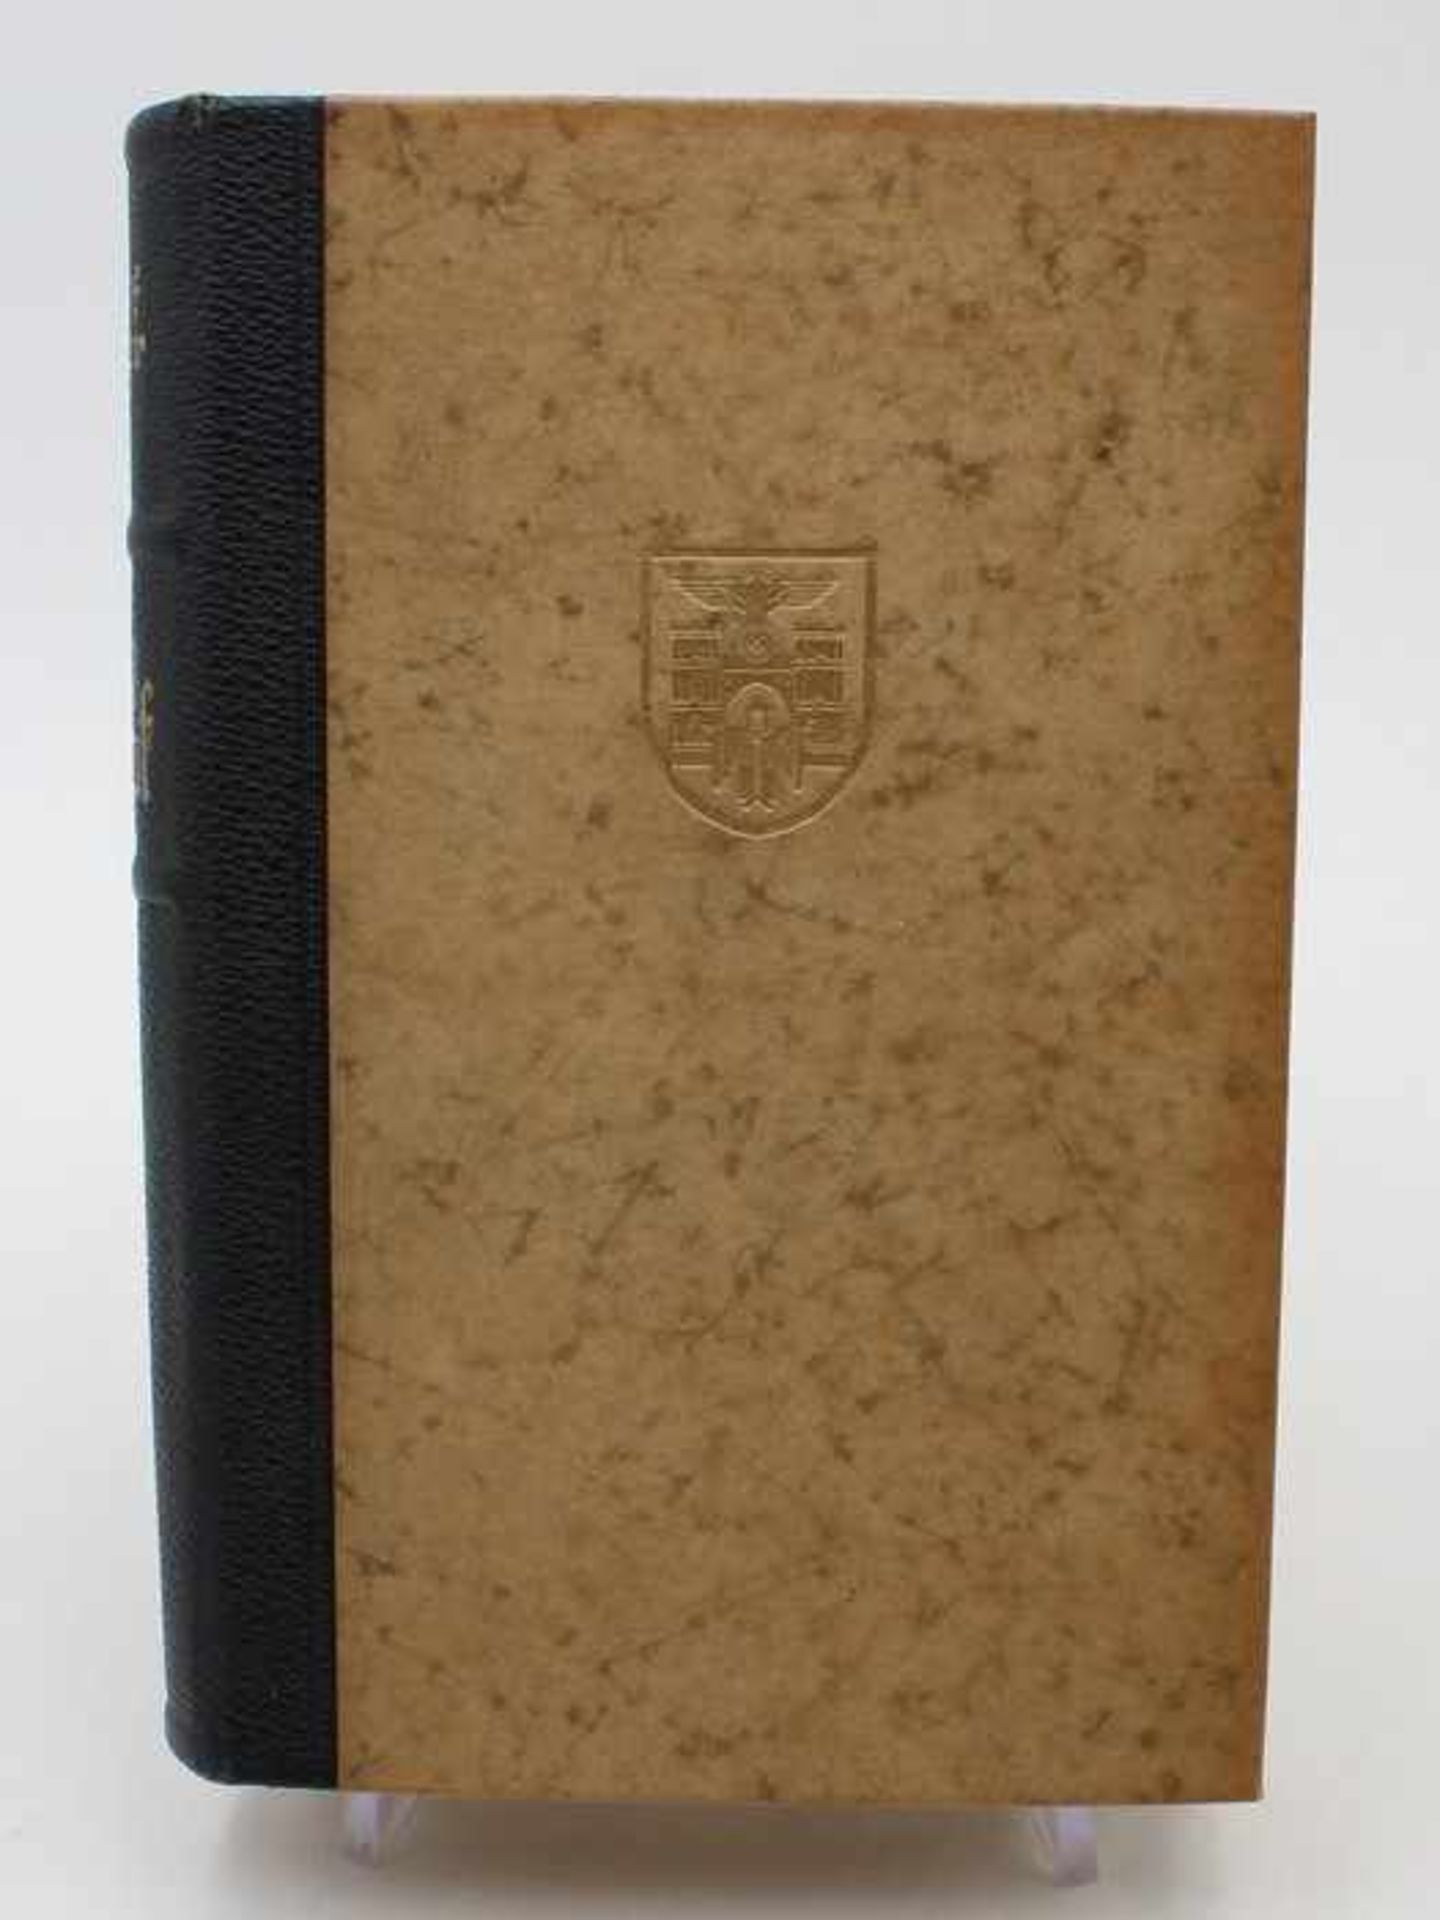 Buch - 3.ReichA.H., "Mein Kampf", 2 Bde. in einem Band, ungekürzte Ausgabe, 405.-409. Aufl., 1939 - Bild 2 aus 10